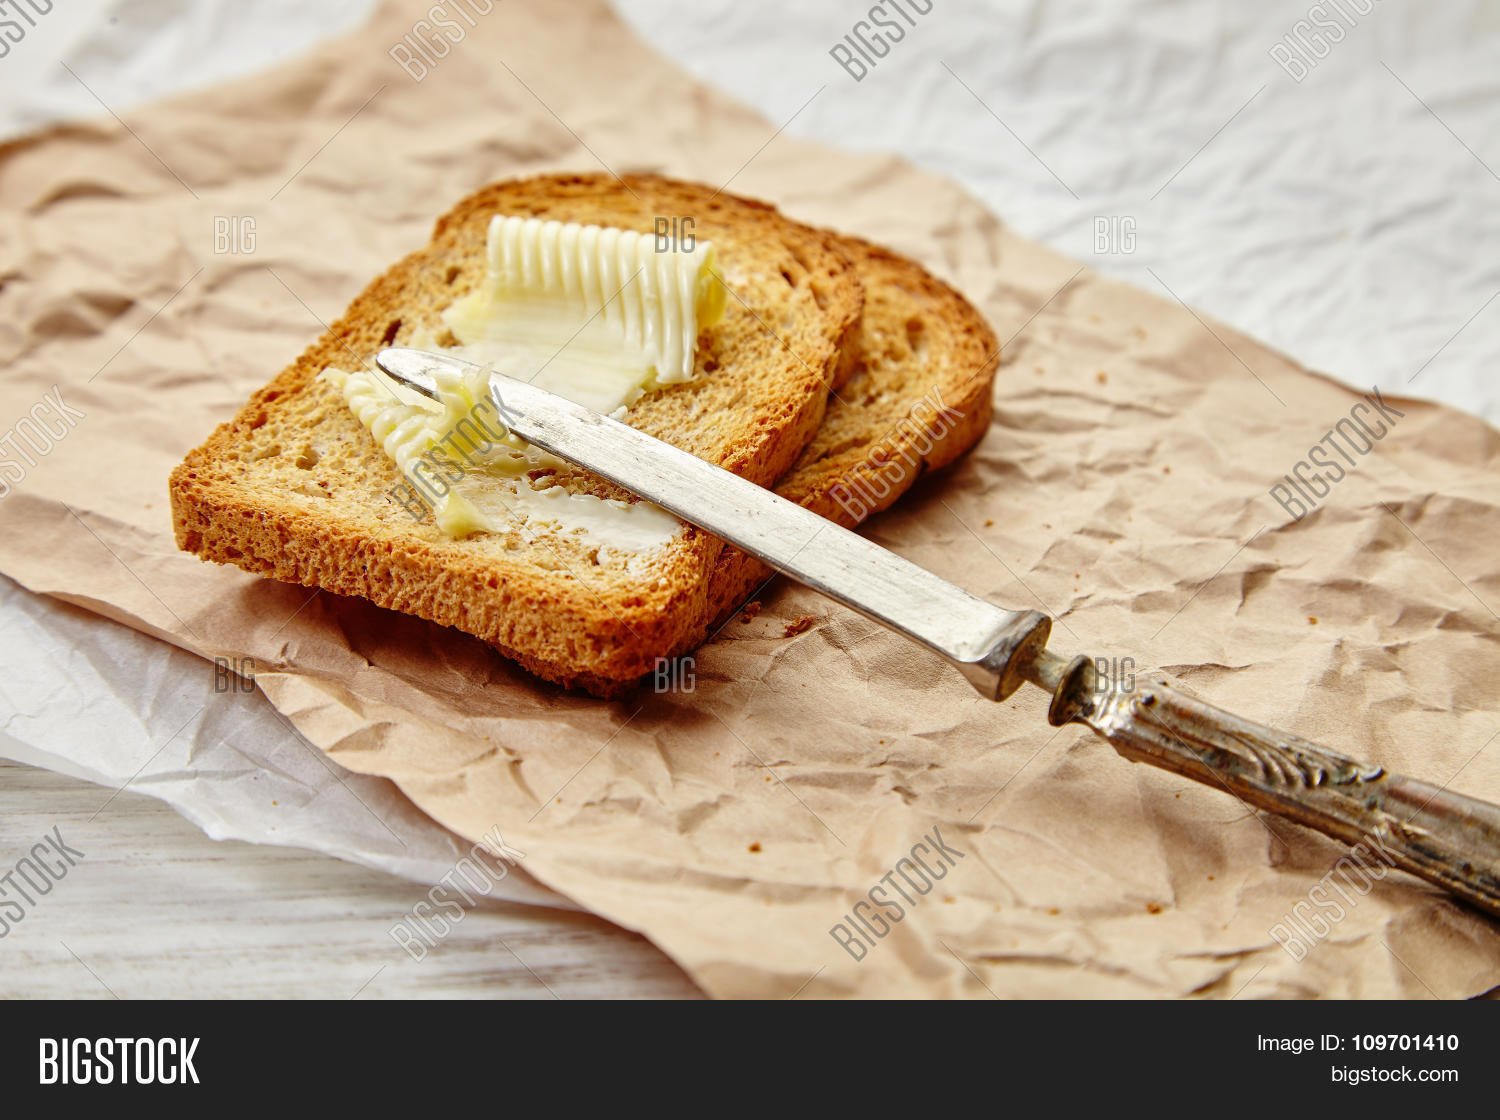 Хлеб с маслом рецепт. Бутерброд с маслом. Хлеб с маслом. Сливочное масло на хлебе. Красивый бутерброд с маслом.